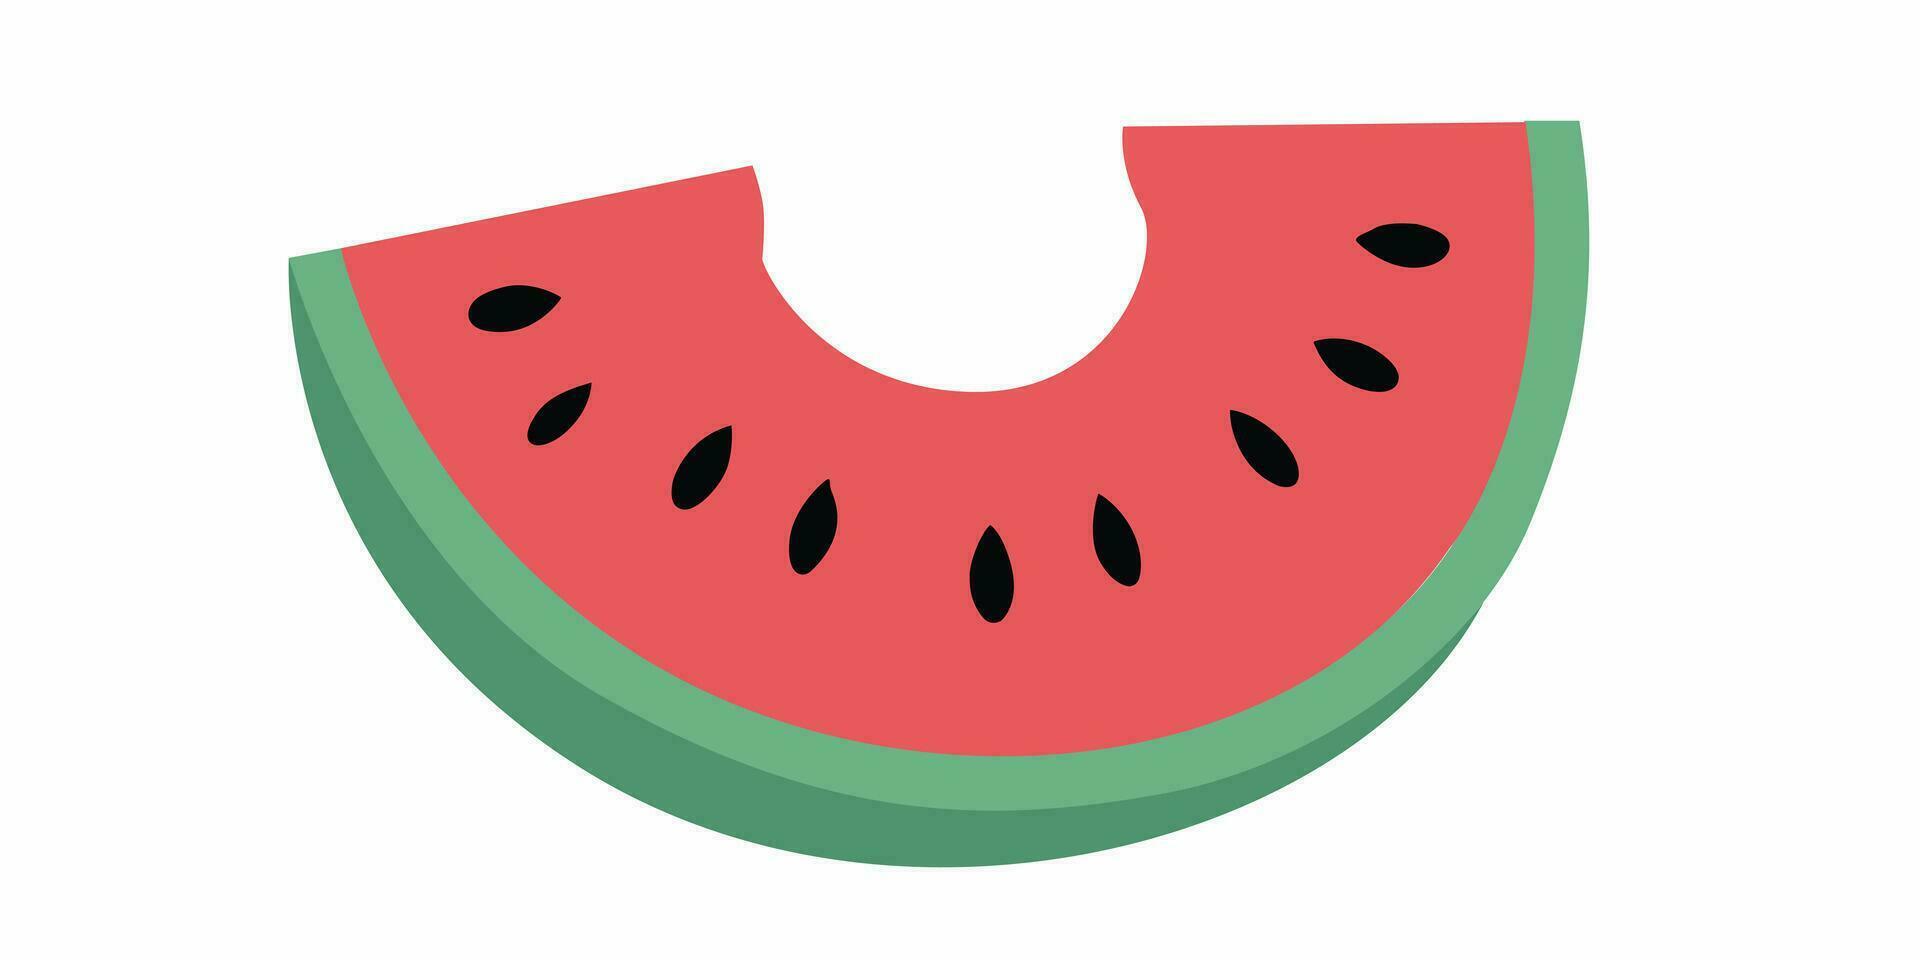 Bitten röd vattenmelon skiva vektor. skiva av röd vattenmelon ClipArt. vektor